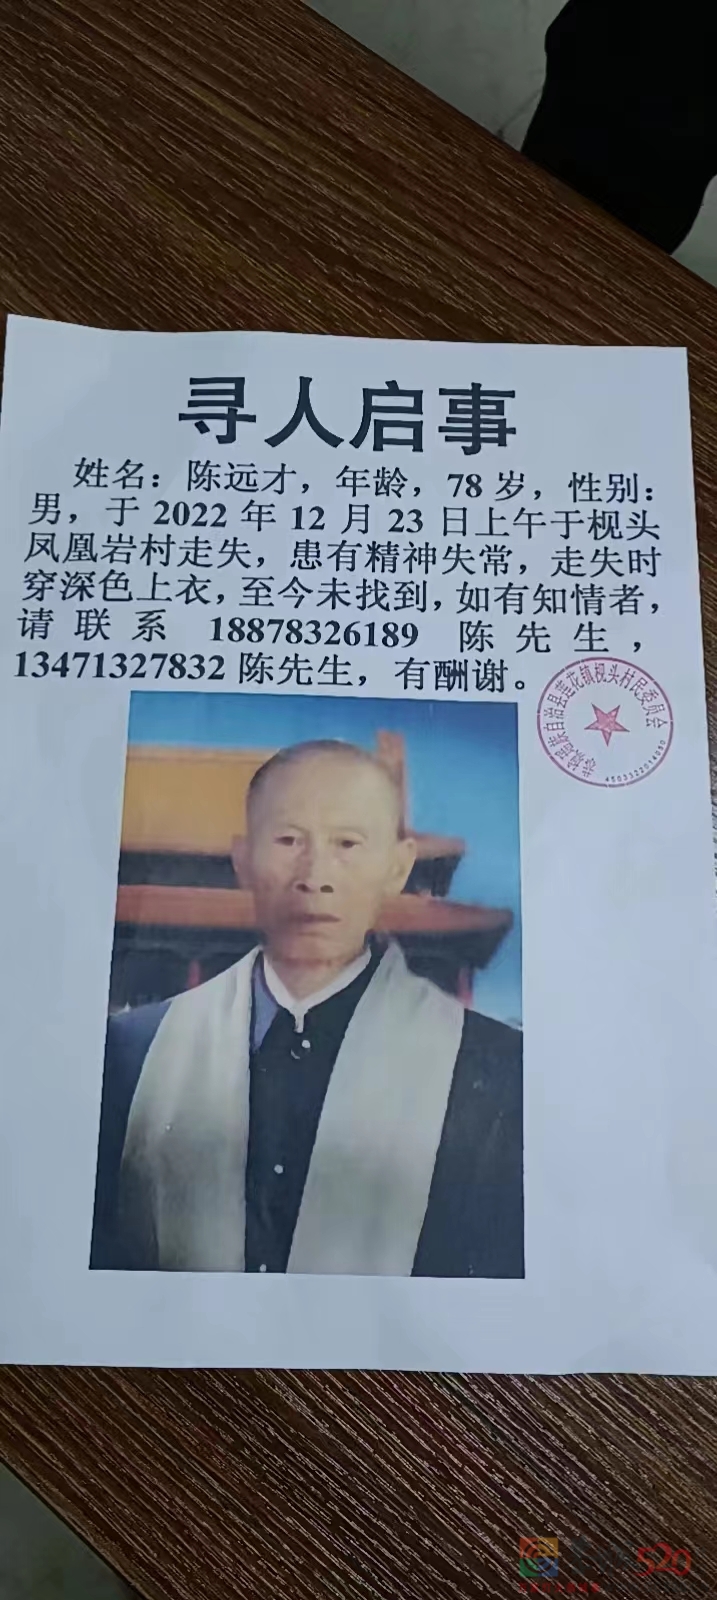 78岁老人于2022年12月23日上午在枧头凤凰岩村走失,至今未找到995 / 作者:论坛小编01 / 帖子ID:302907